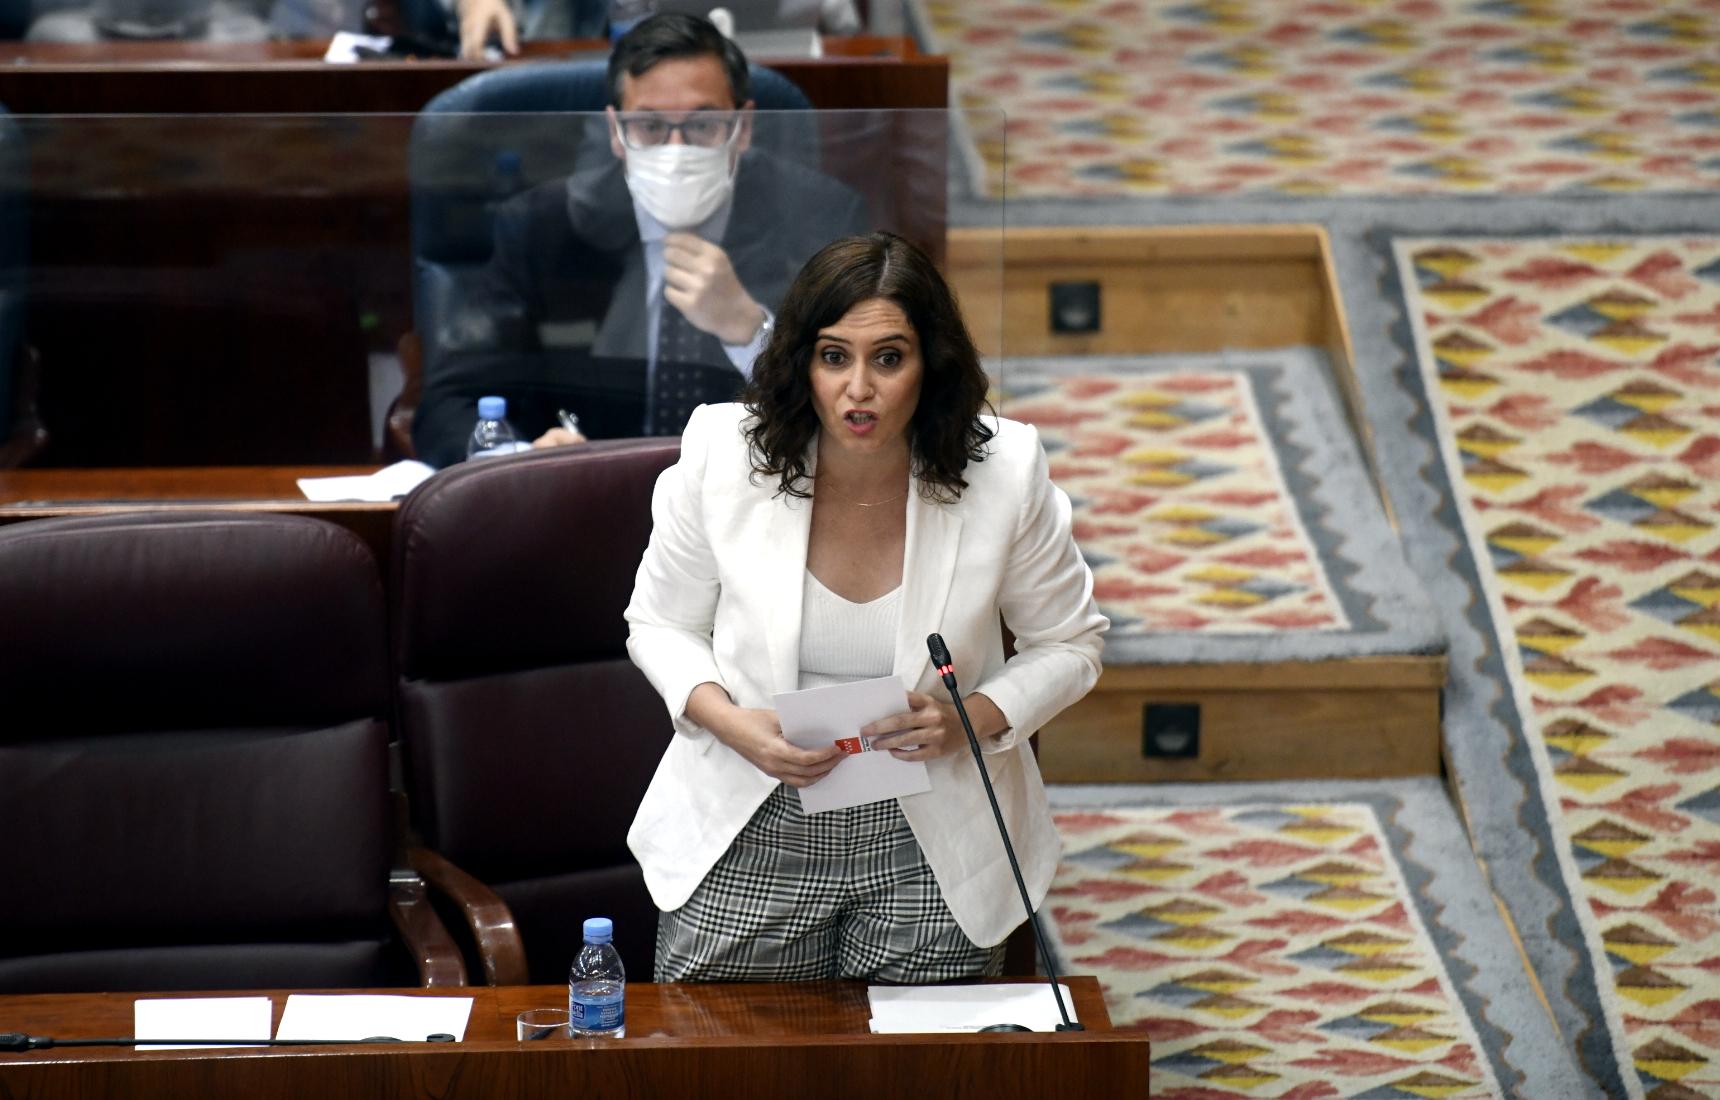  La presidenta de la Comunidad de Madrid, Isabel Díaz Ayuso, responde a una pregunta durante una sesión de control al Gobierno en la Asamblea de Madrid